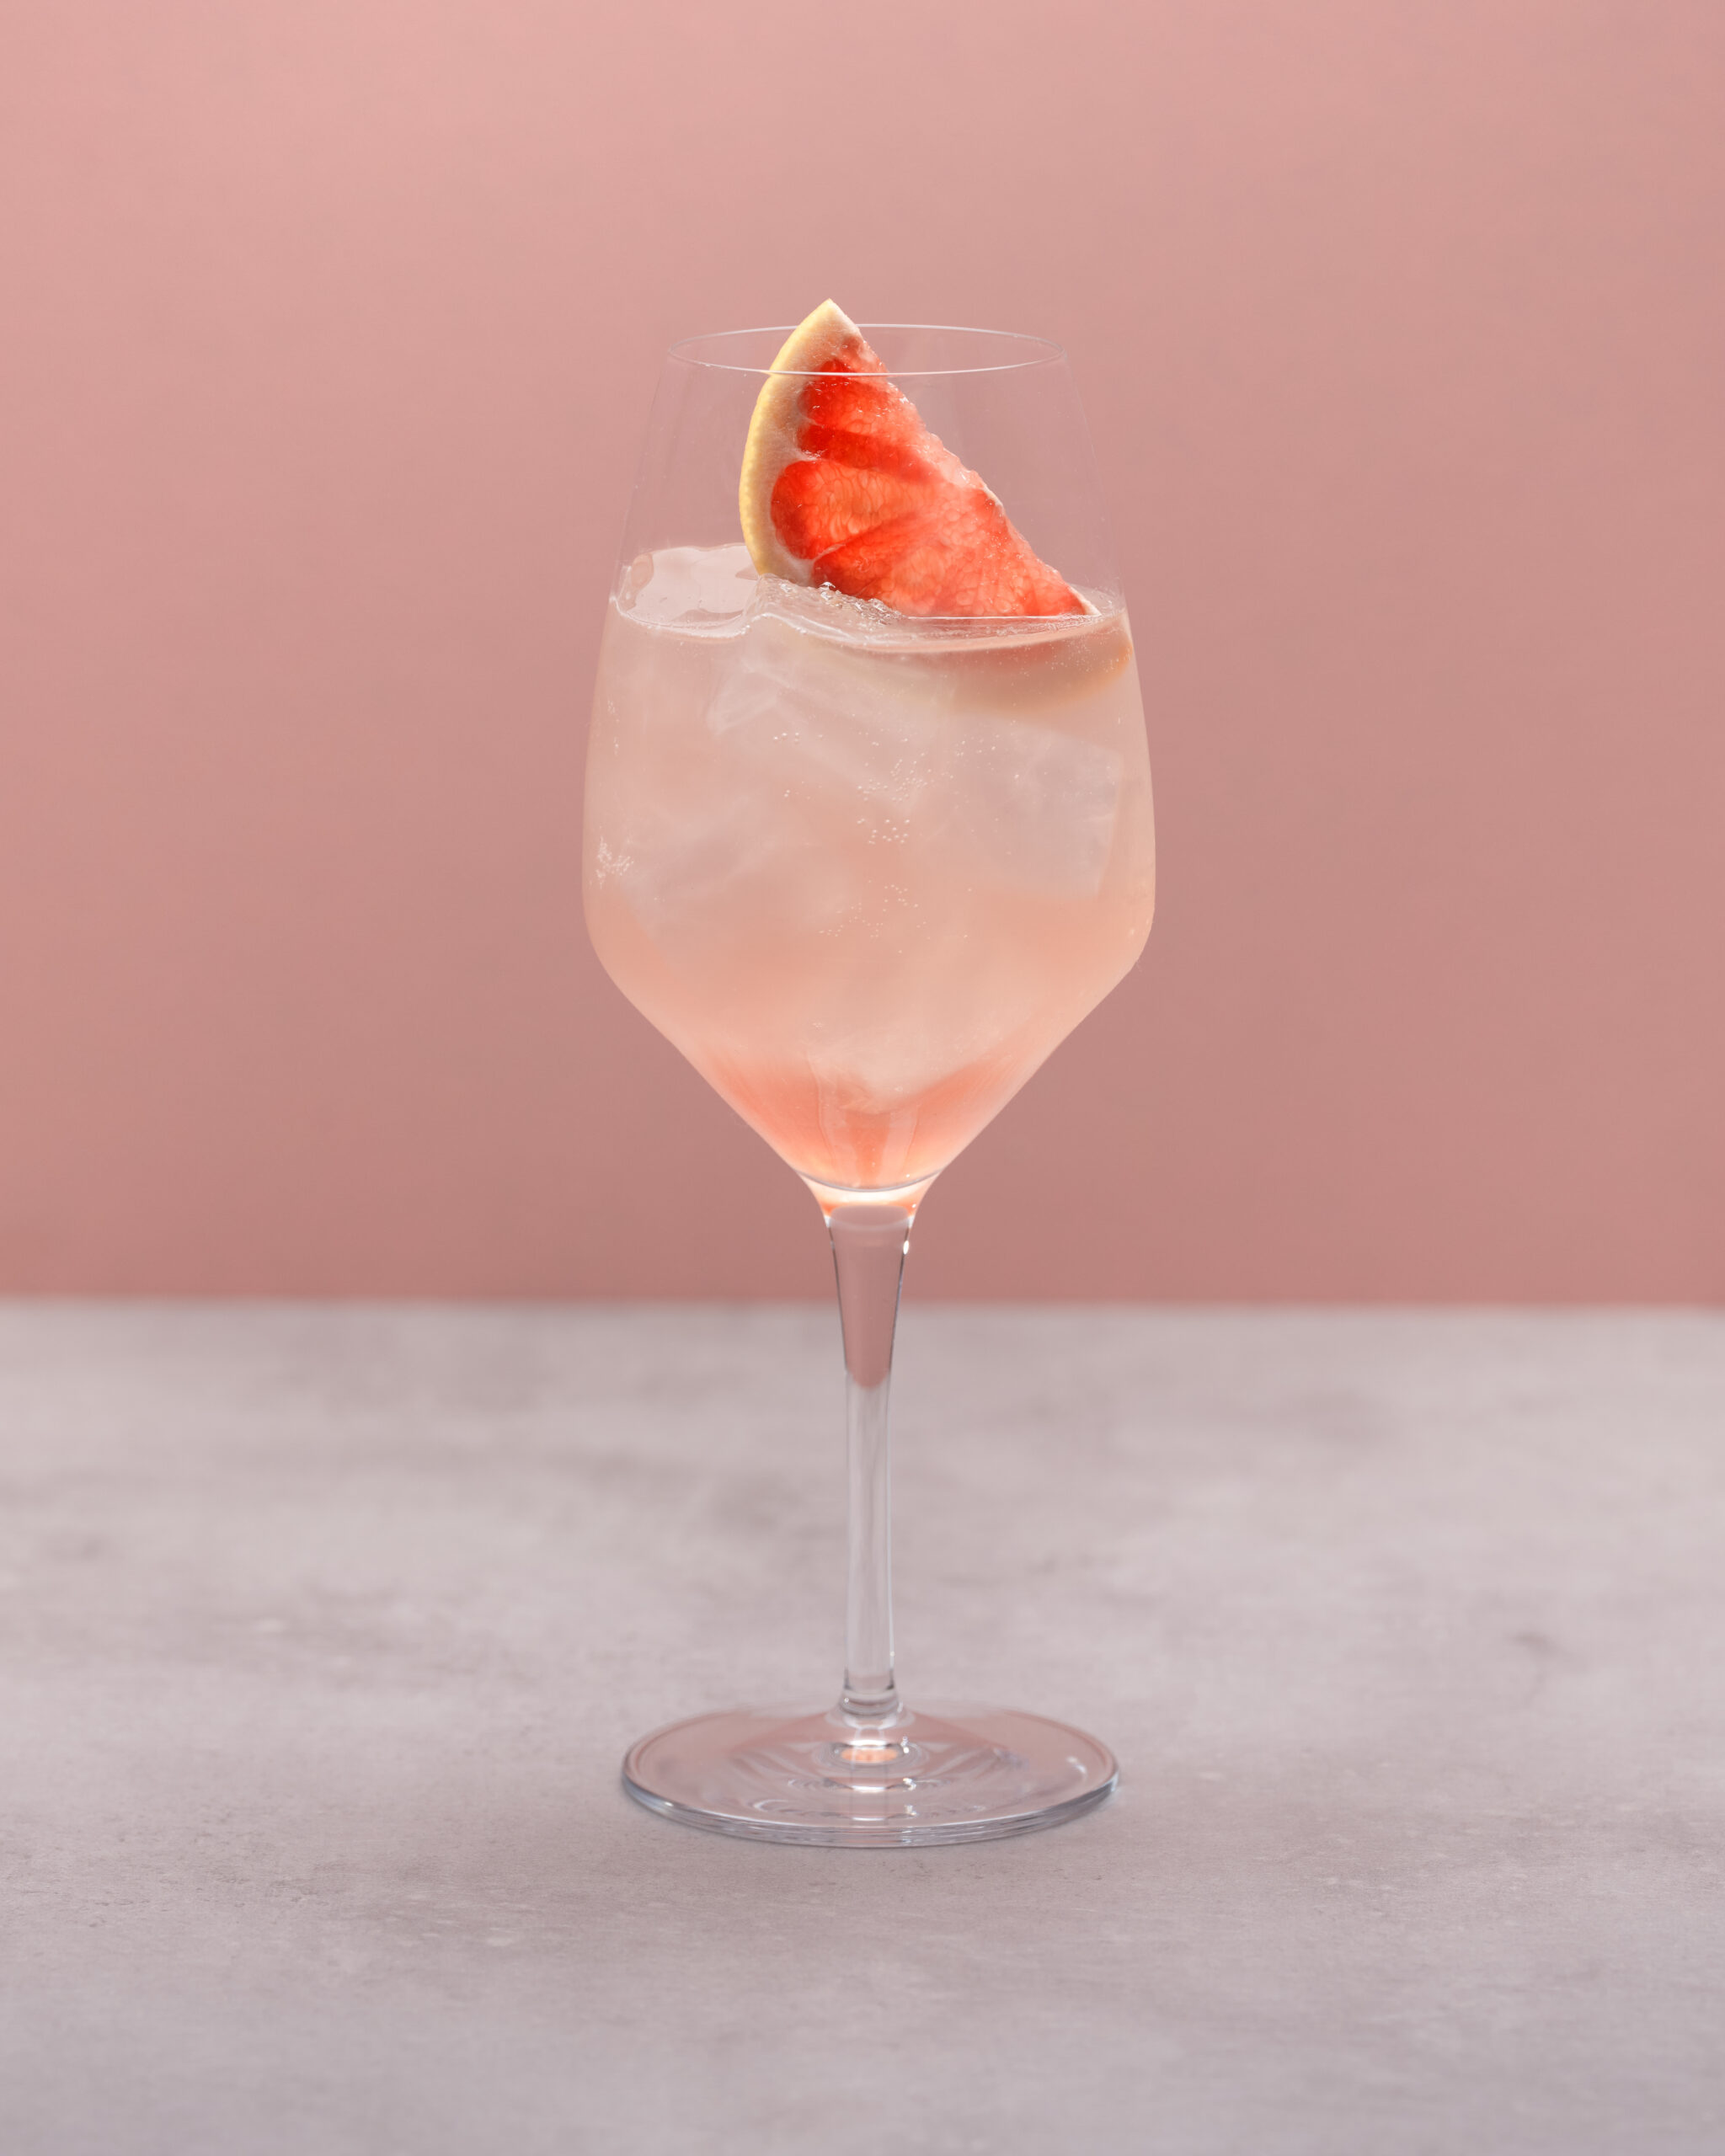 Cocktail van de maand augustus: rhubarb spritz